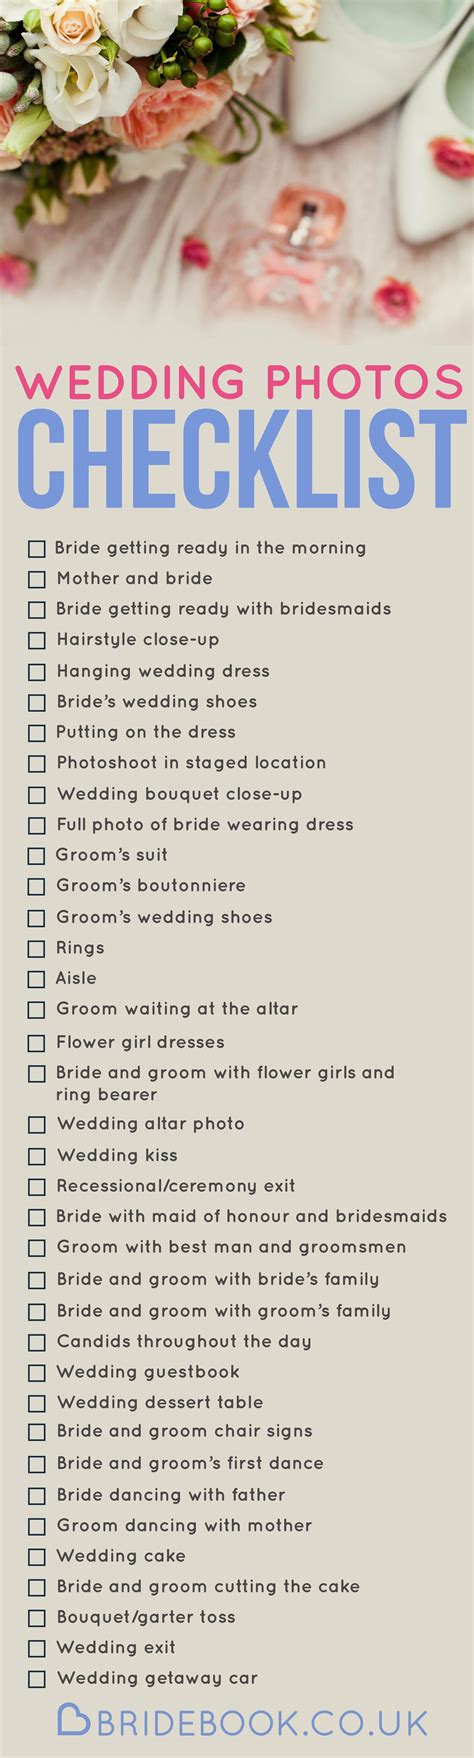 Weddingchecklist Wedding Photo Checklist Wedding Picture List Wedding Planning Checklist Budget